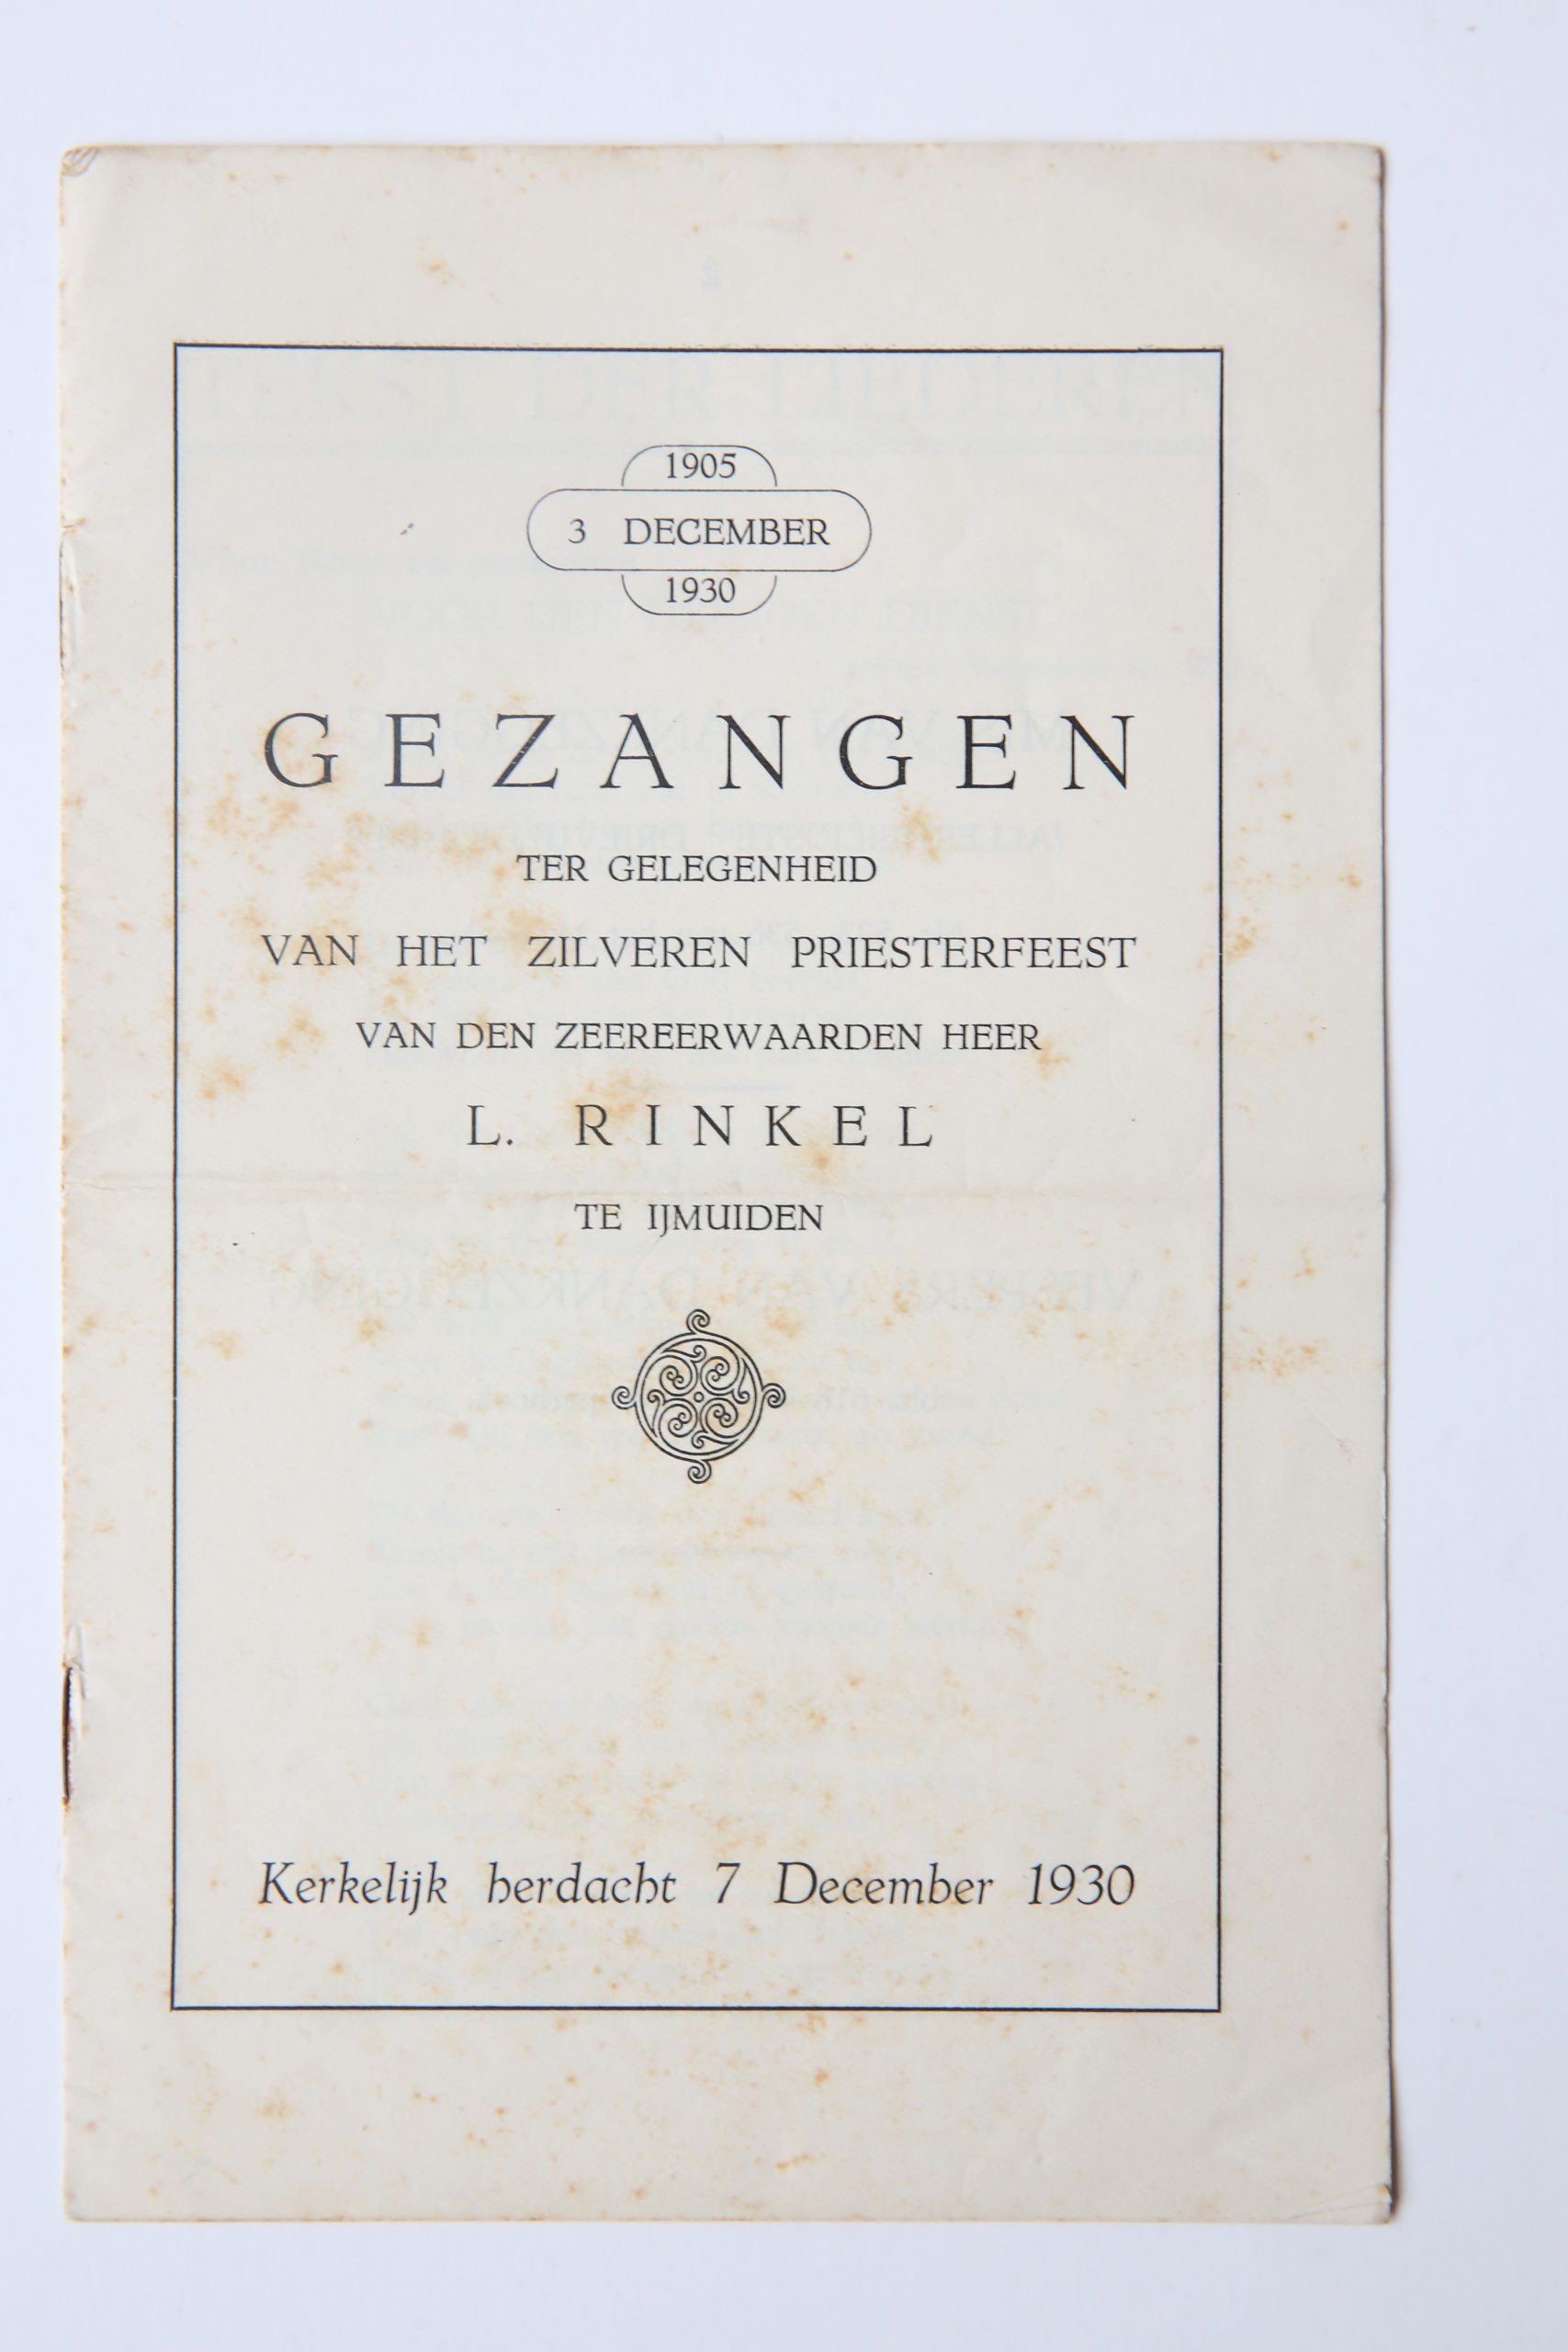  - IJMUIDEN, RINKEL Gezangen t.g.v. het zilveren priesterfeest van ... L. Rinkel te IJmuiden, kerkelijk herdacht 7 December 1930, gedrukt, 8, 8 p.